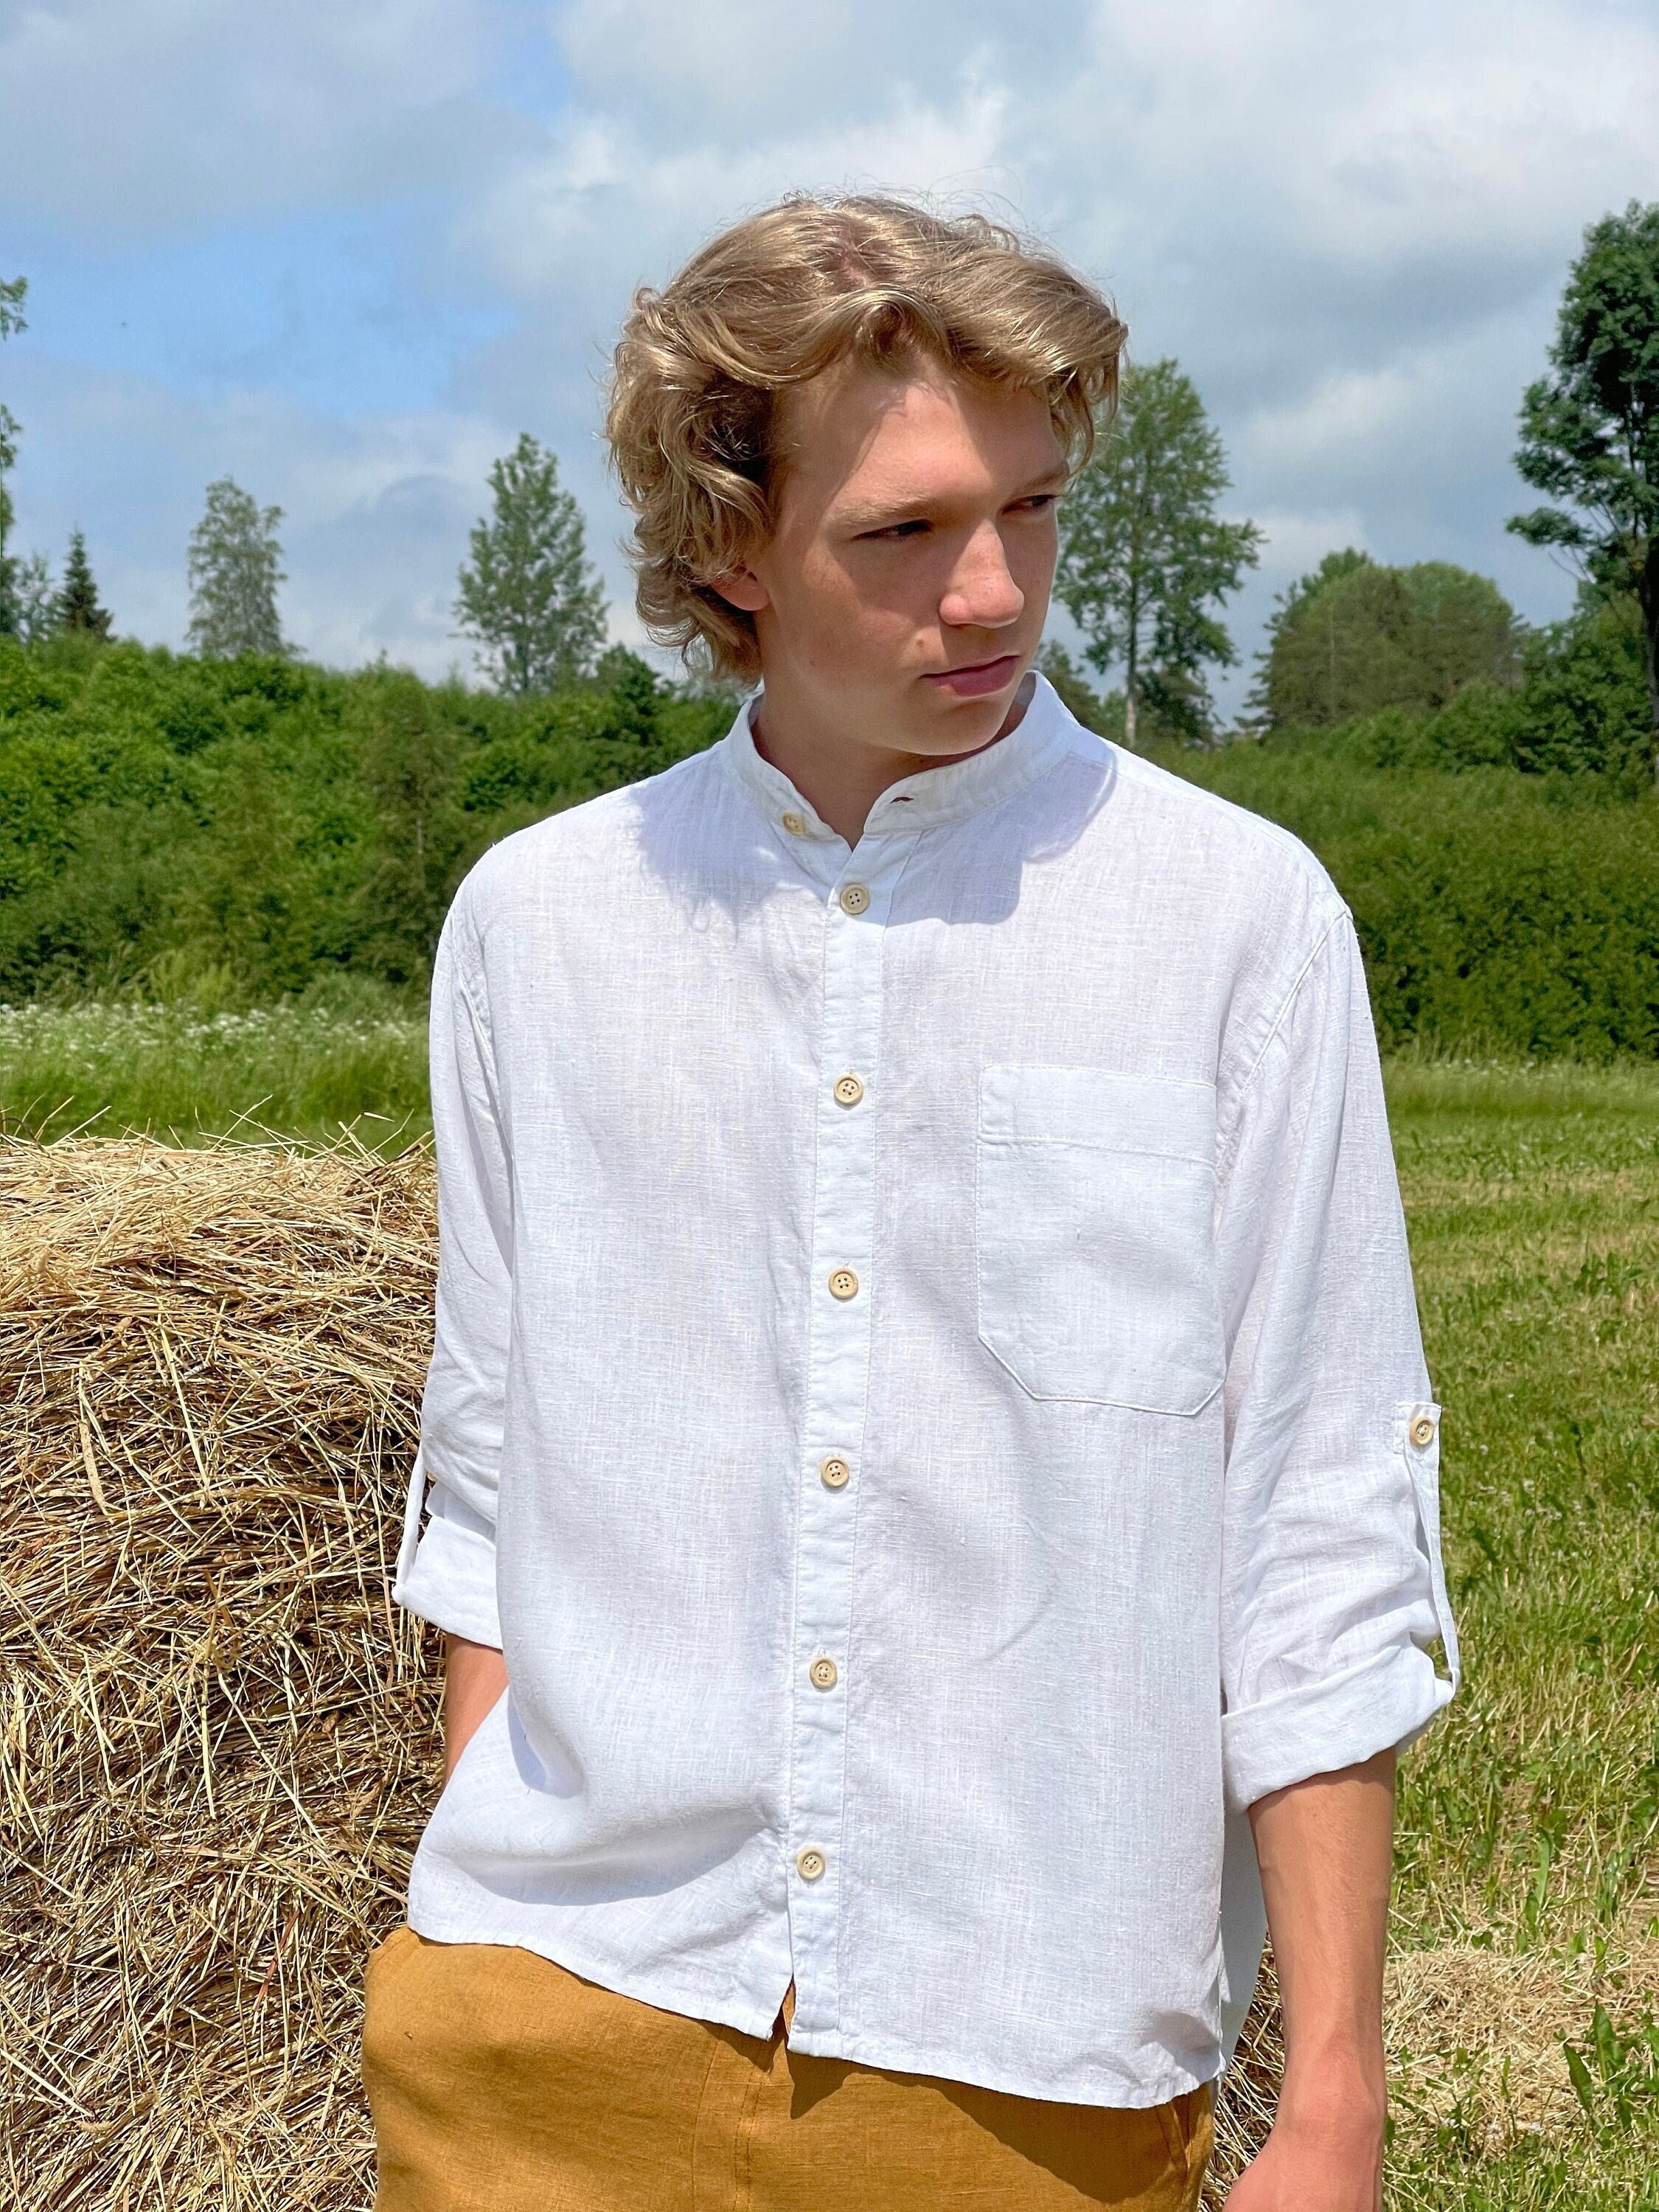 White Linen Shirt KARL, Linen Shirt with Buttons, Men's Shirt